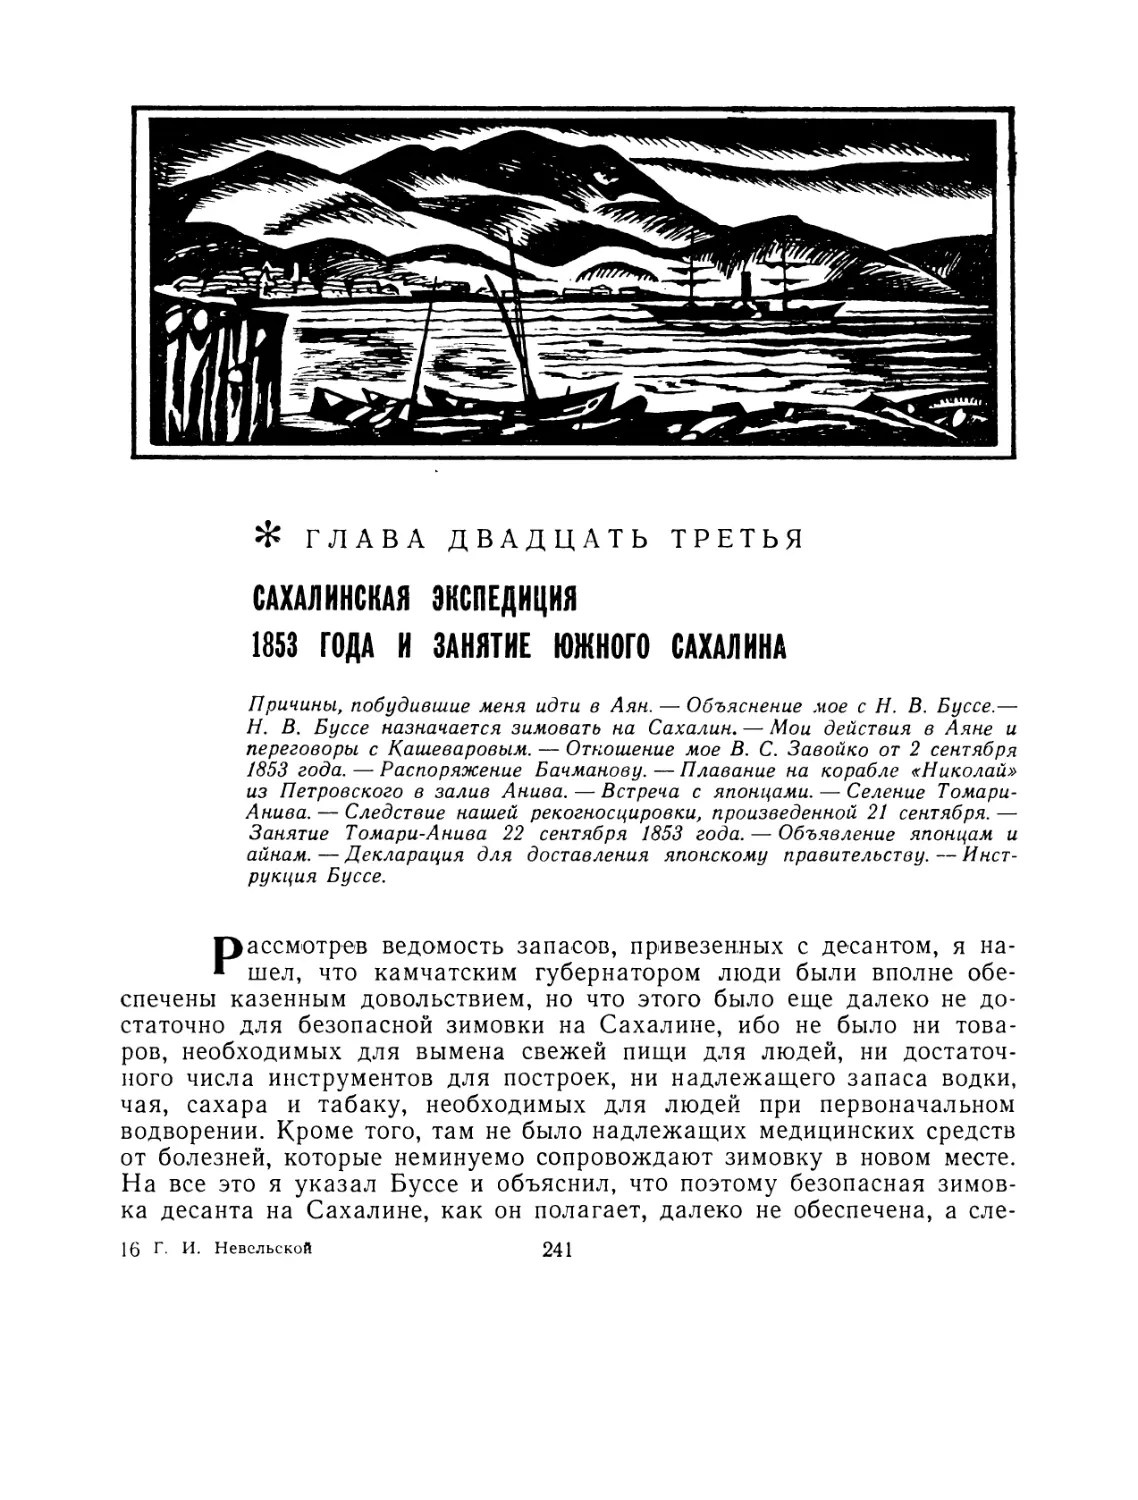 Глава двадцать третья. Сахалинская экспедиция 1853 года и занятие южного Сахалина